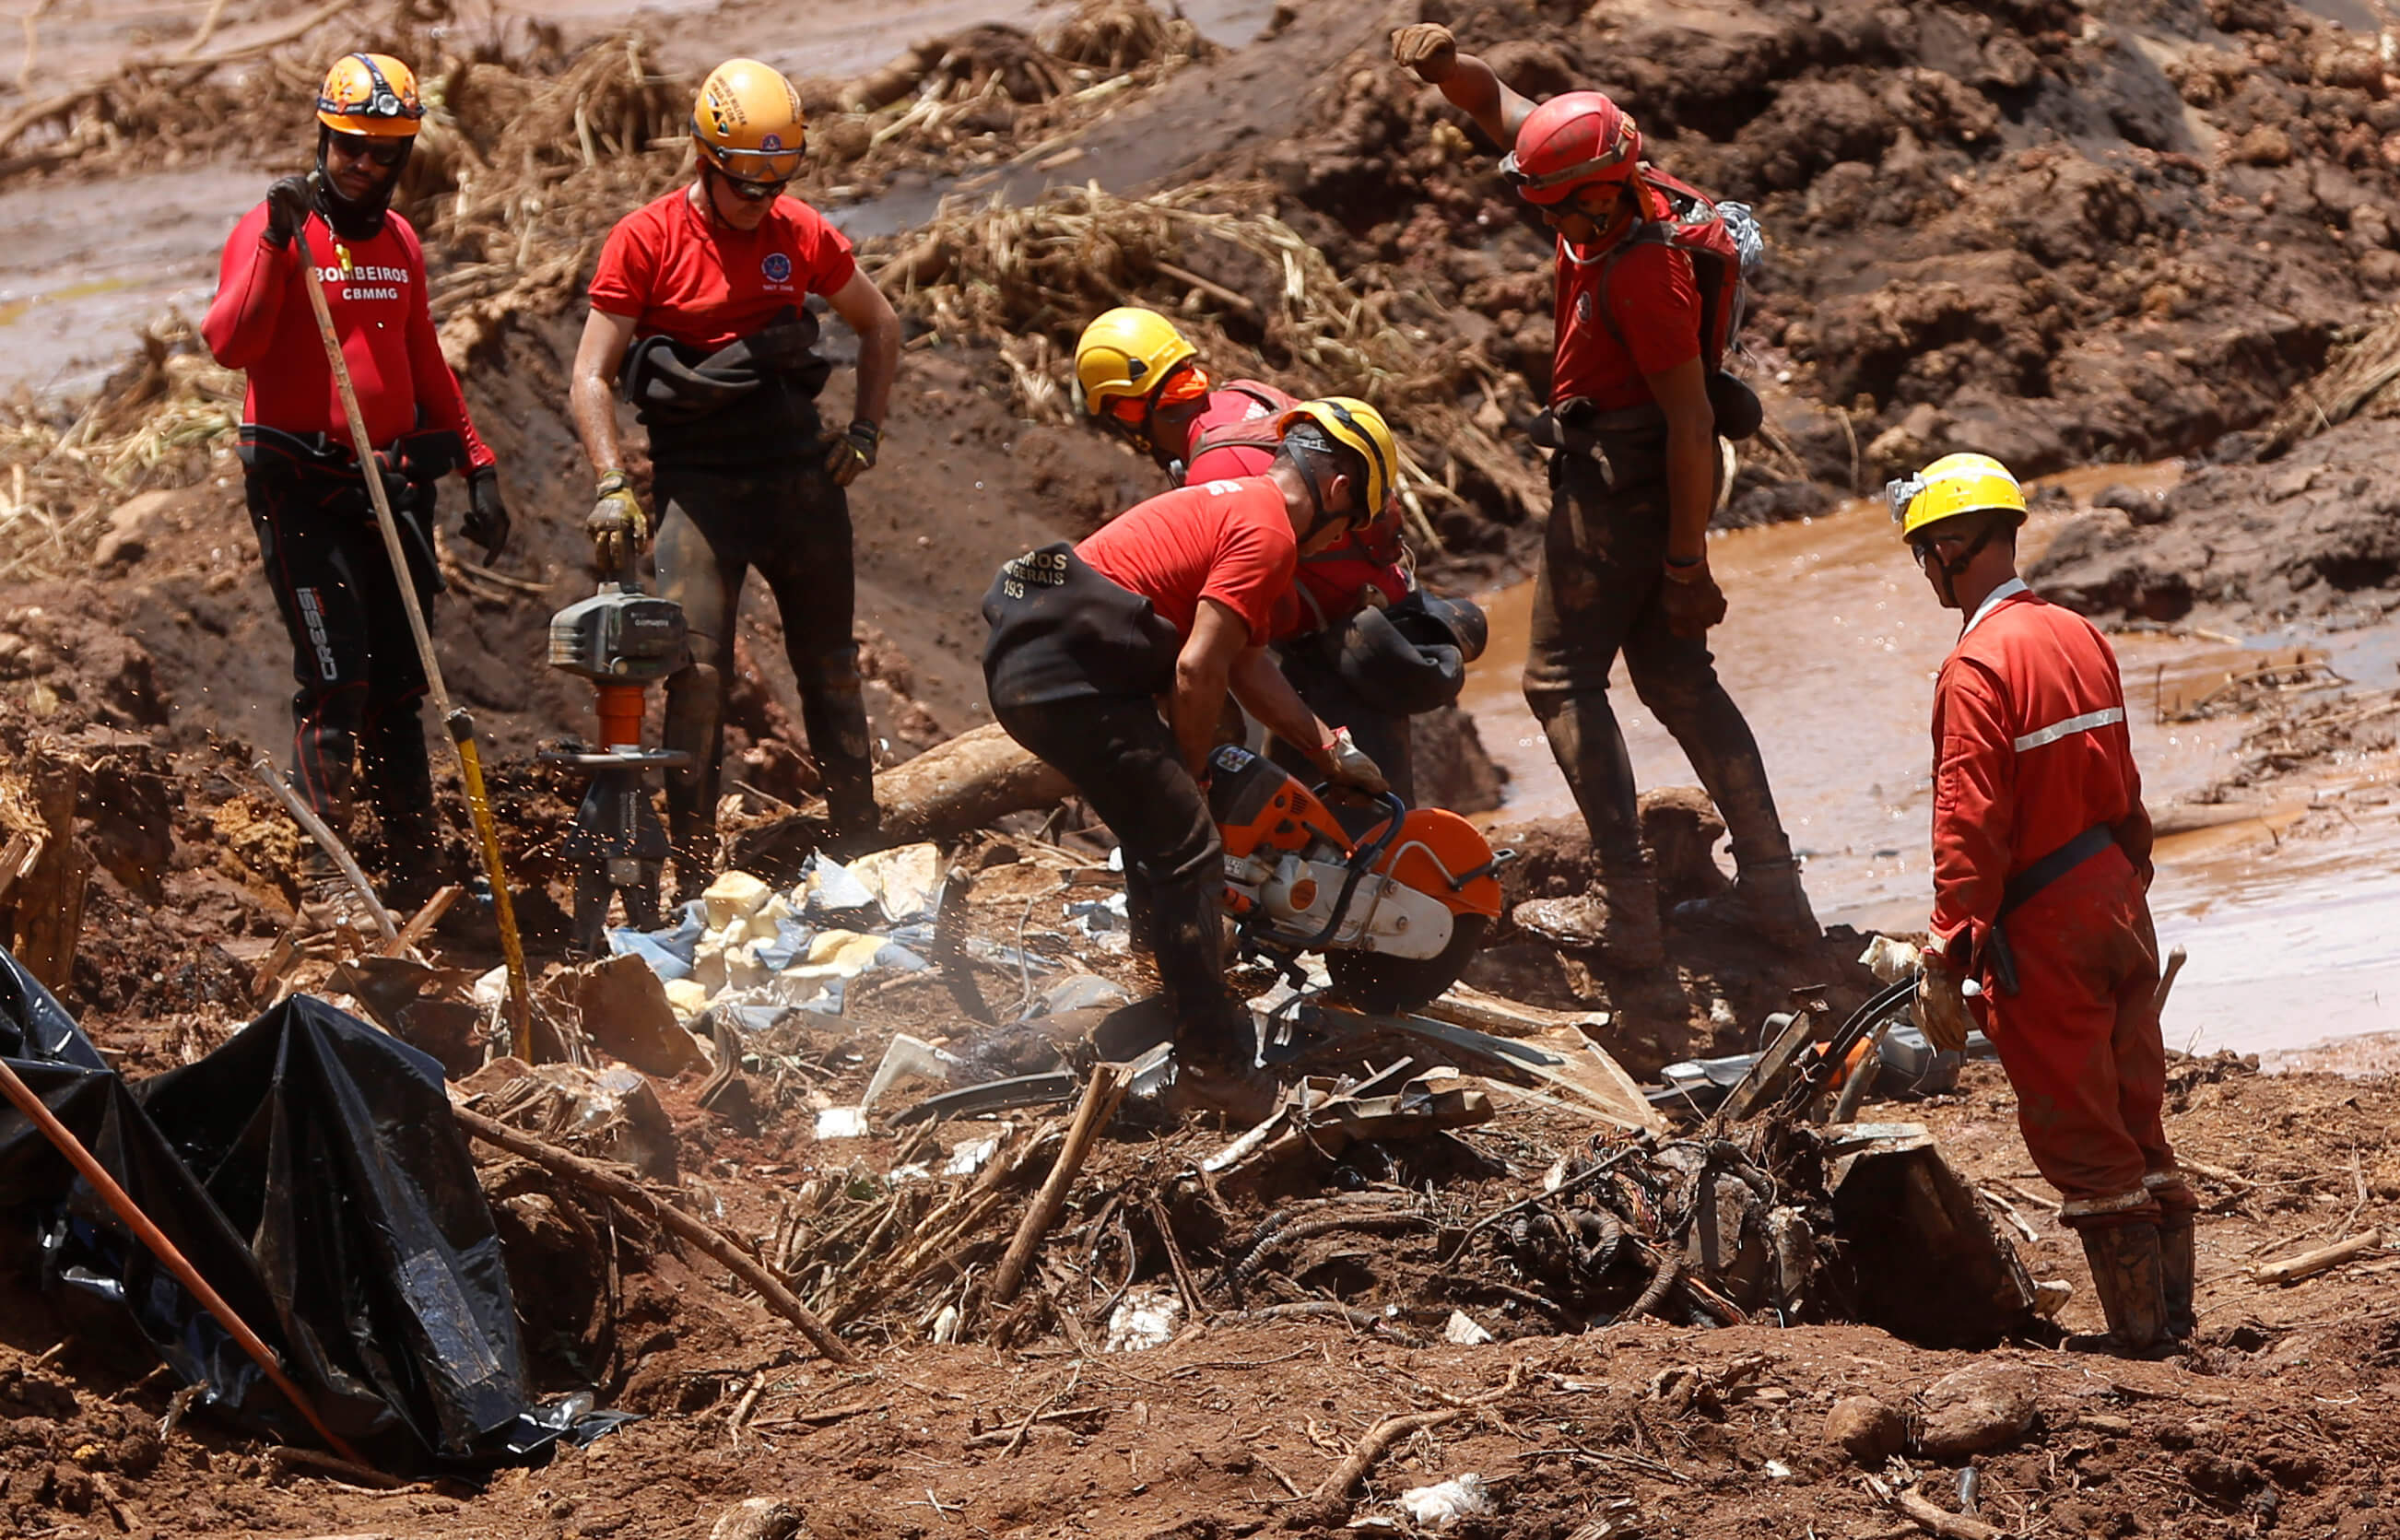 Foto: Rescatistas buscan a sobrevivientes tras accidente minero en Minas Gerais, Brasil, del 28 de enero del 2019